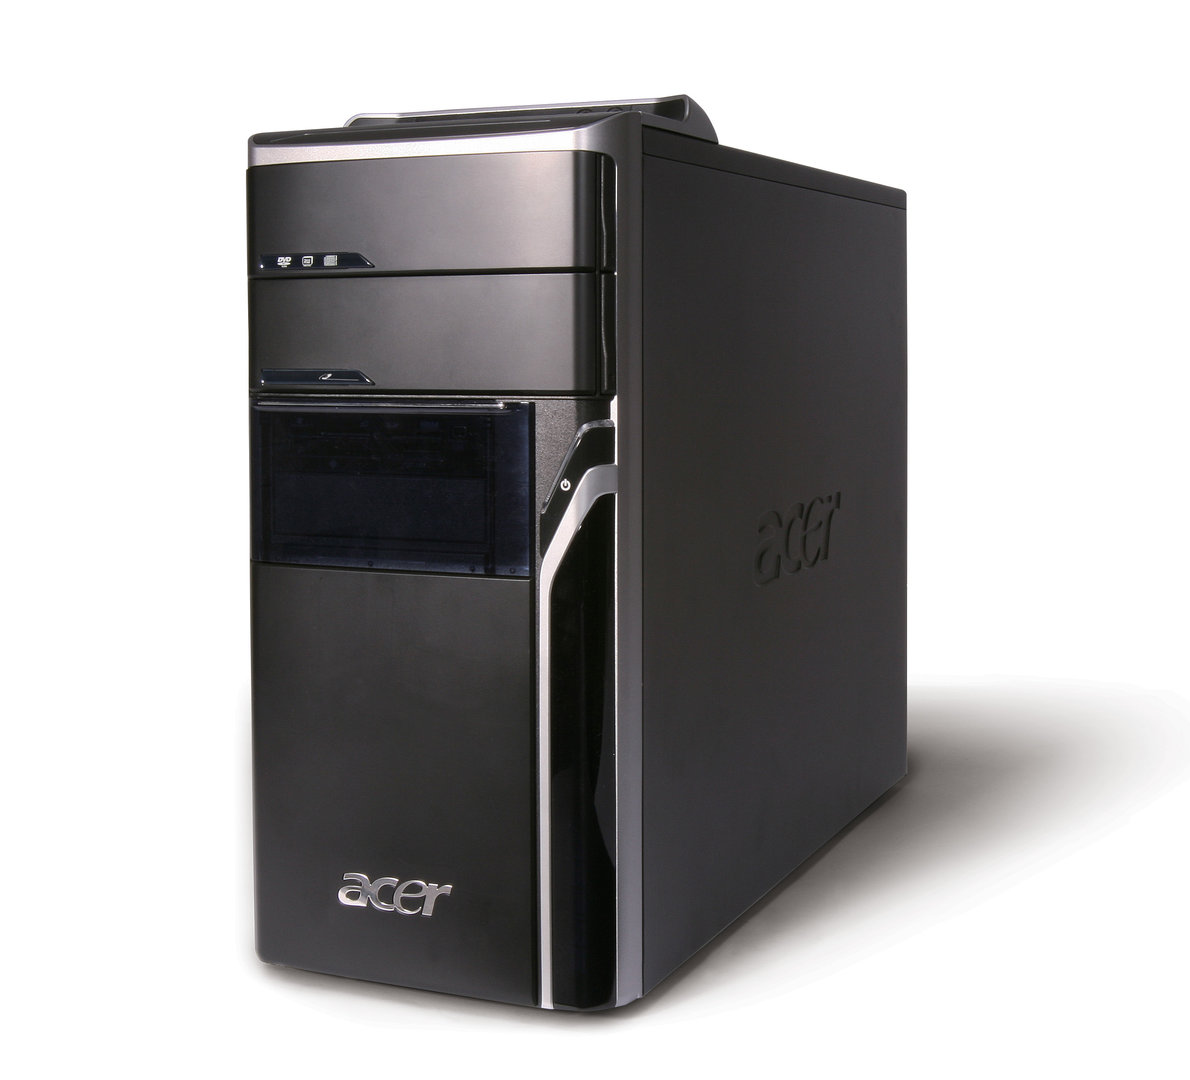 Acer Aspire M5620